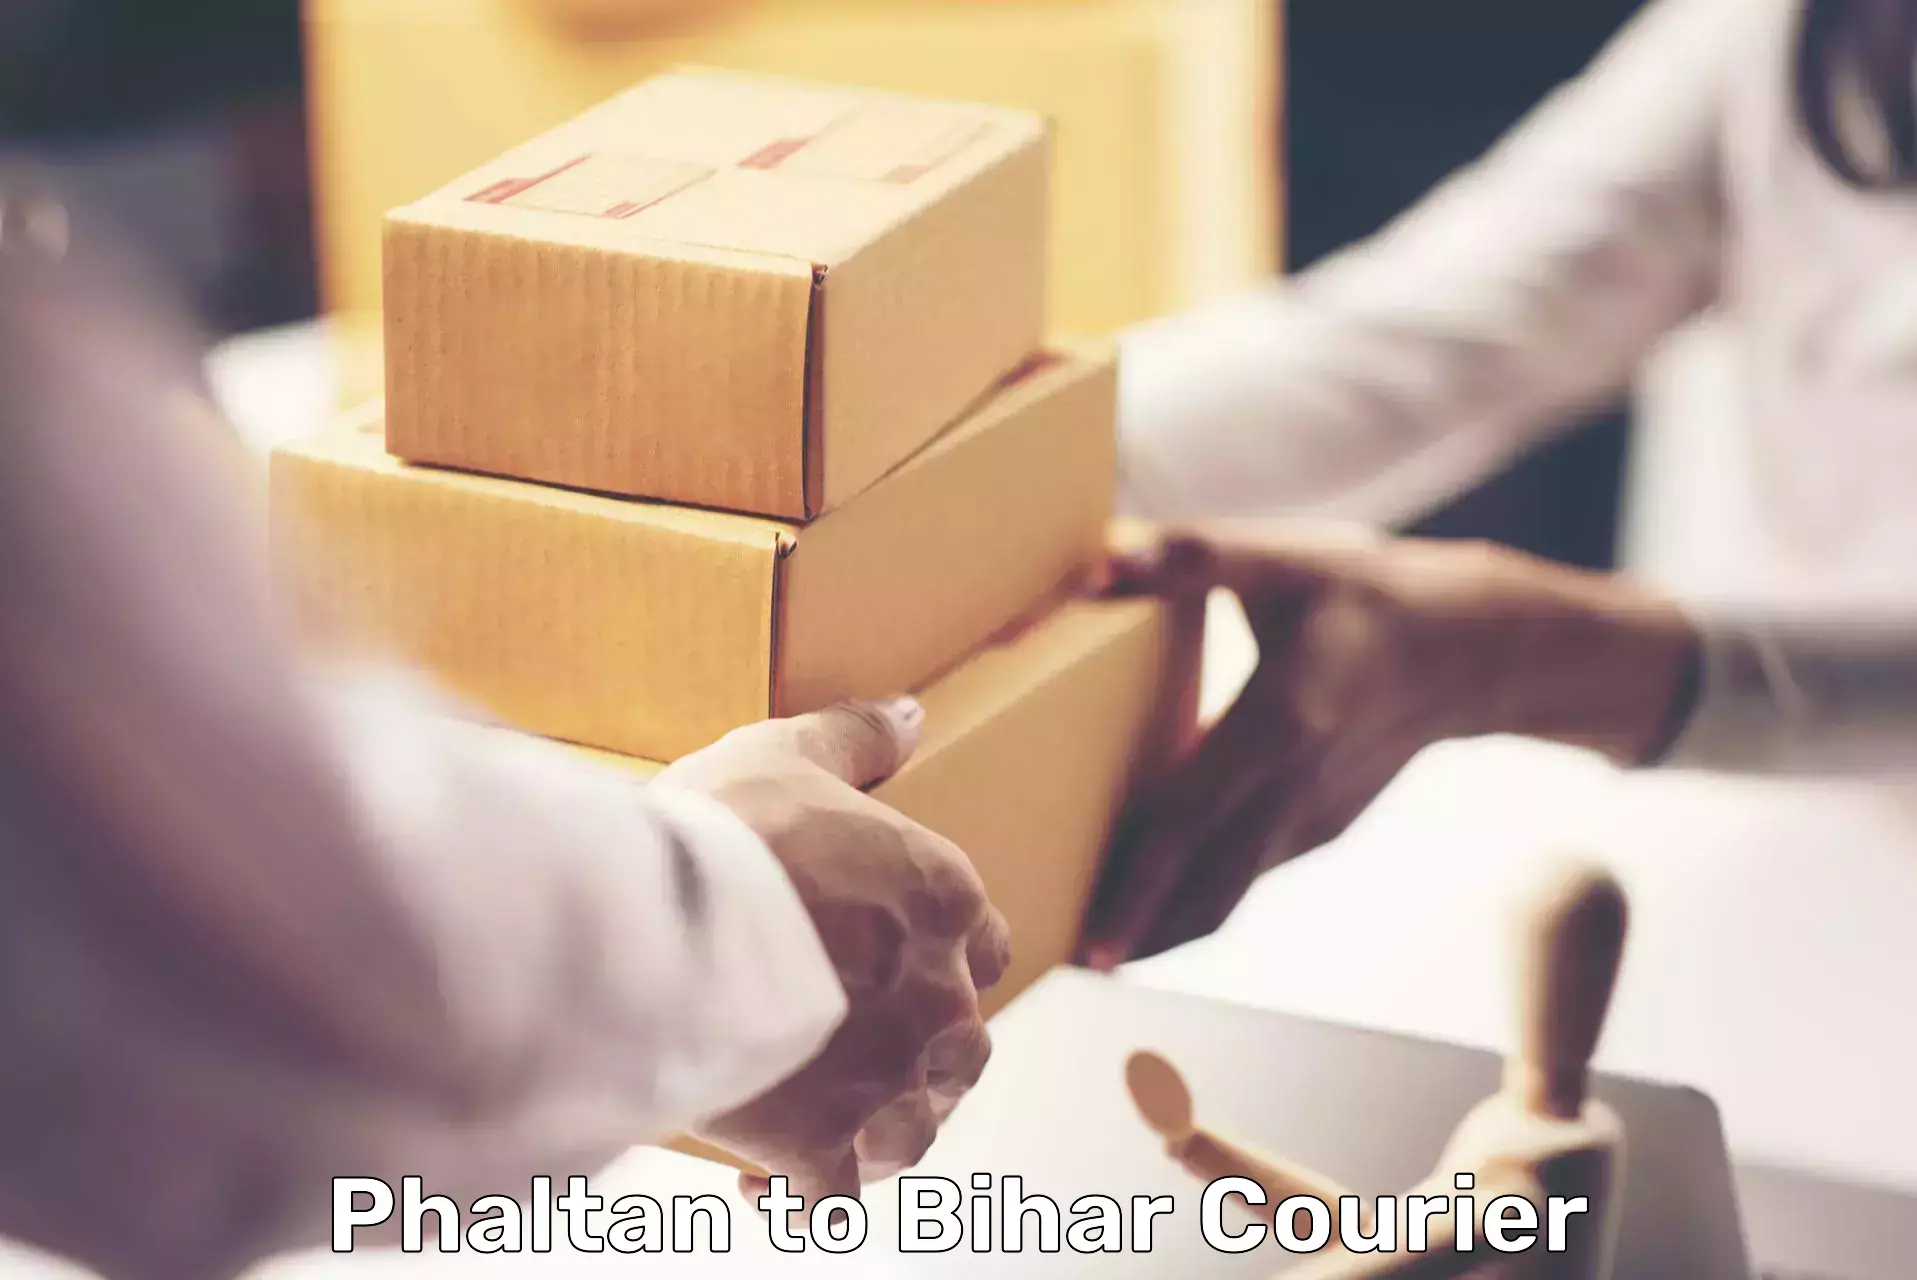 Urgent courier needs Phaltan to Bihar